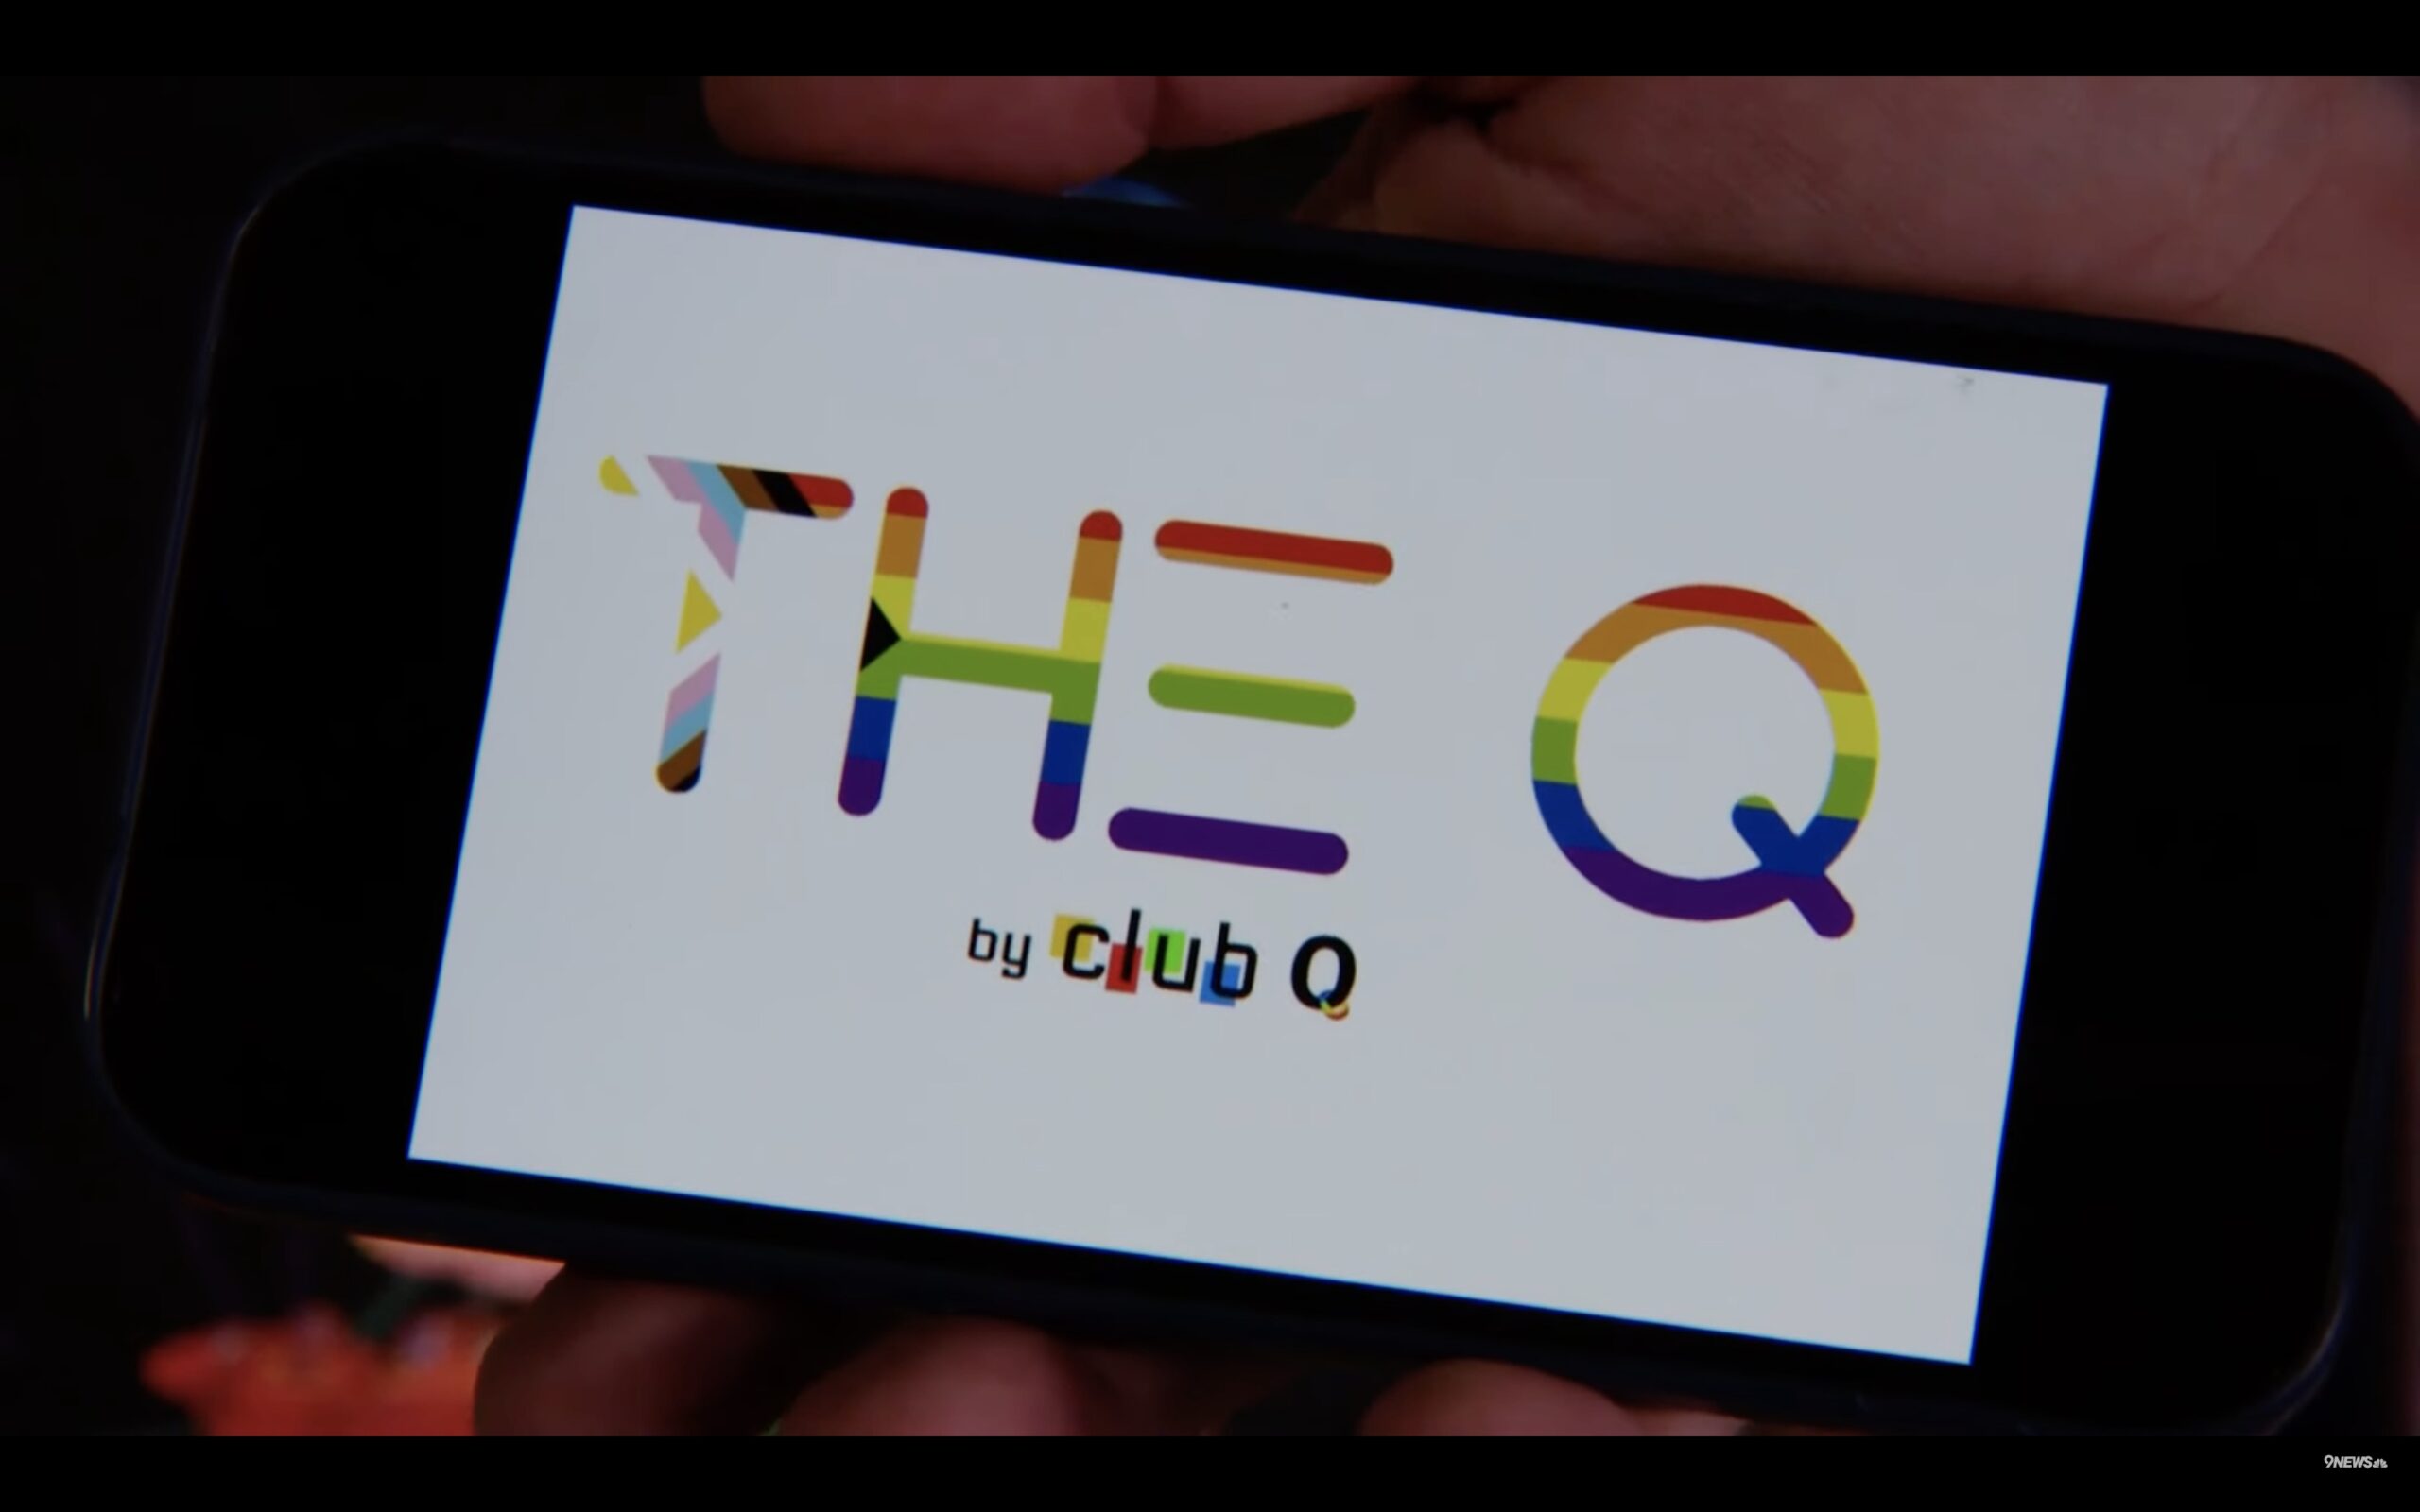 New Pride logo saying The Q by Club Q